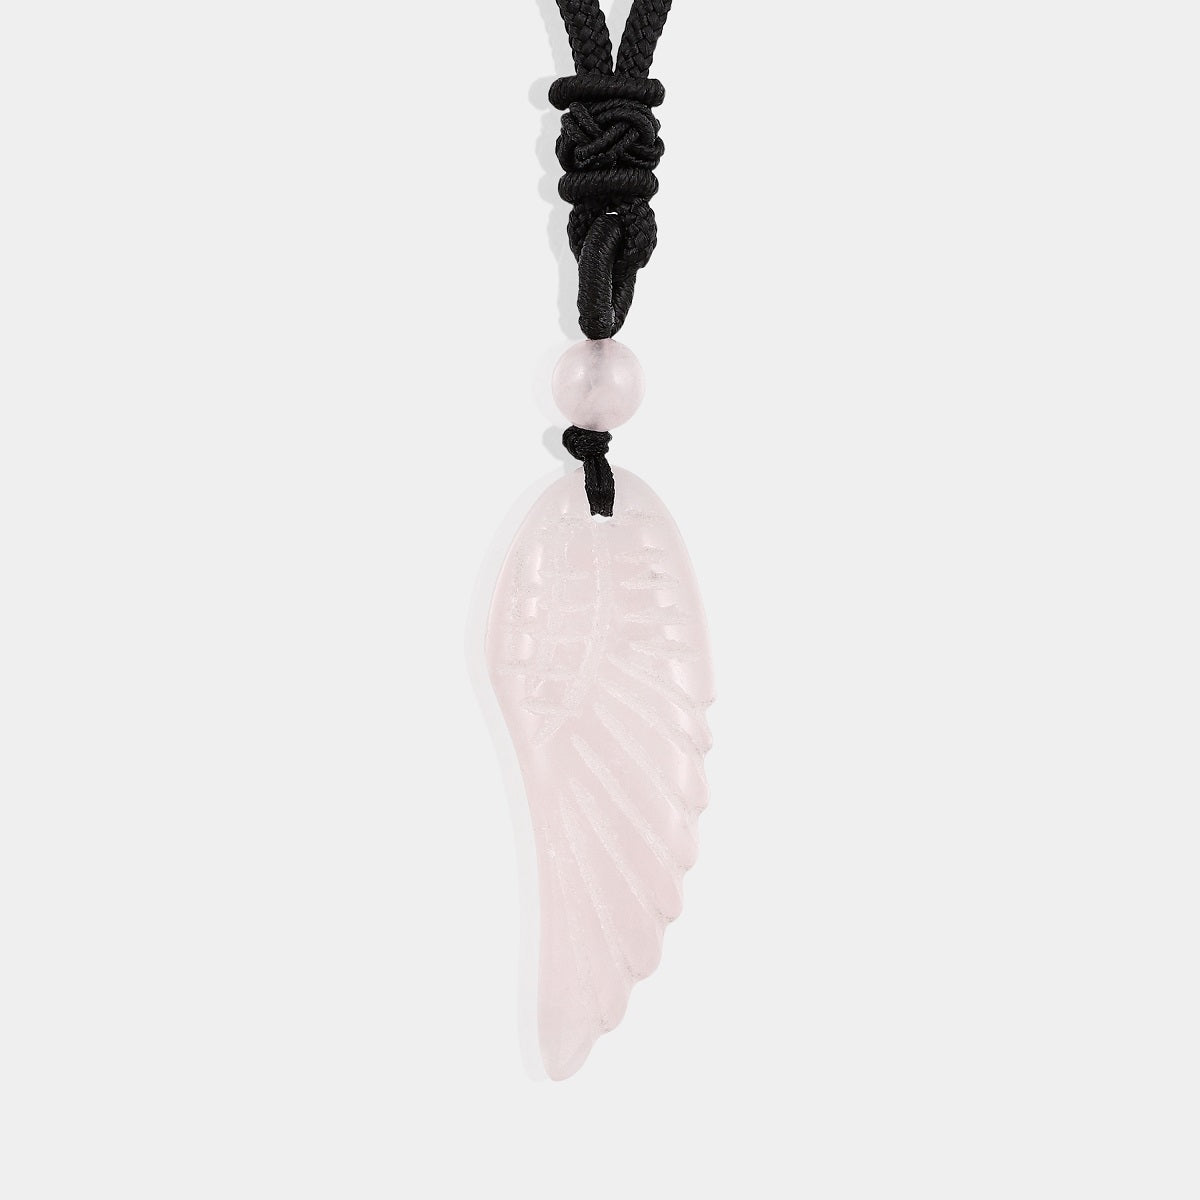 Exquisite carved wing pendant made of rose quartz